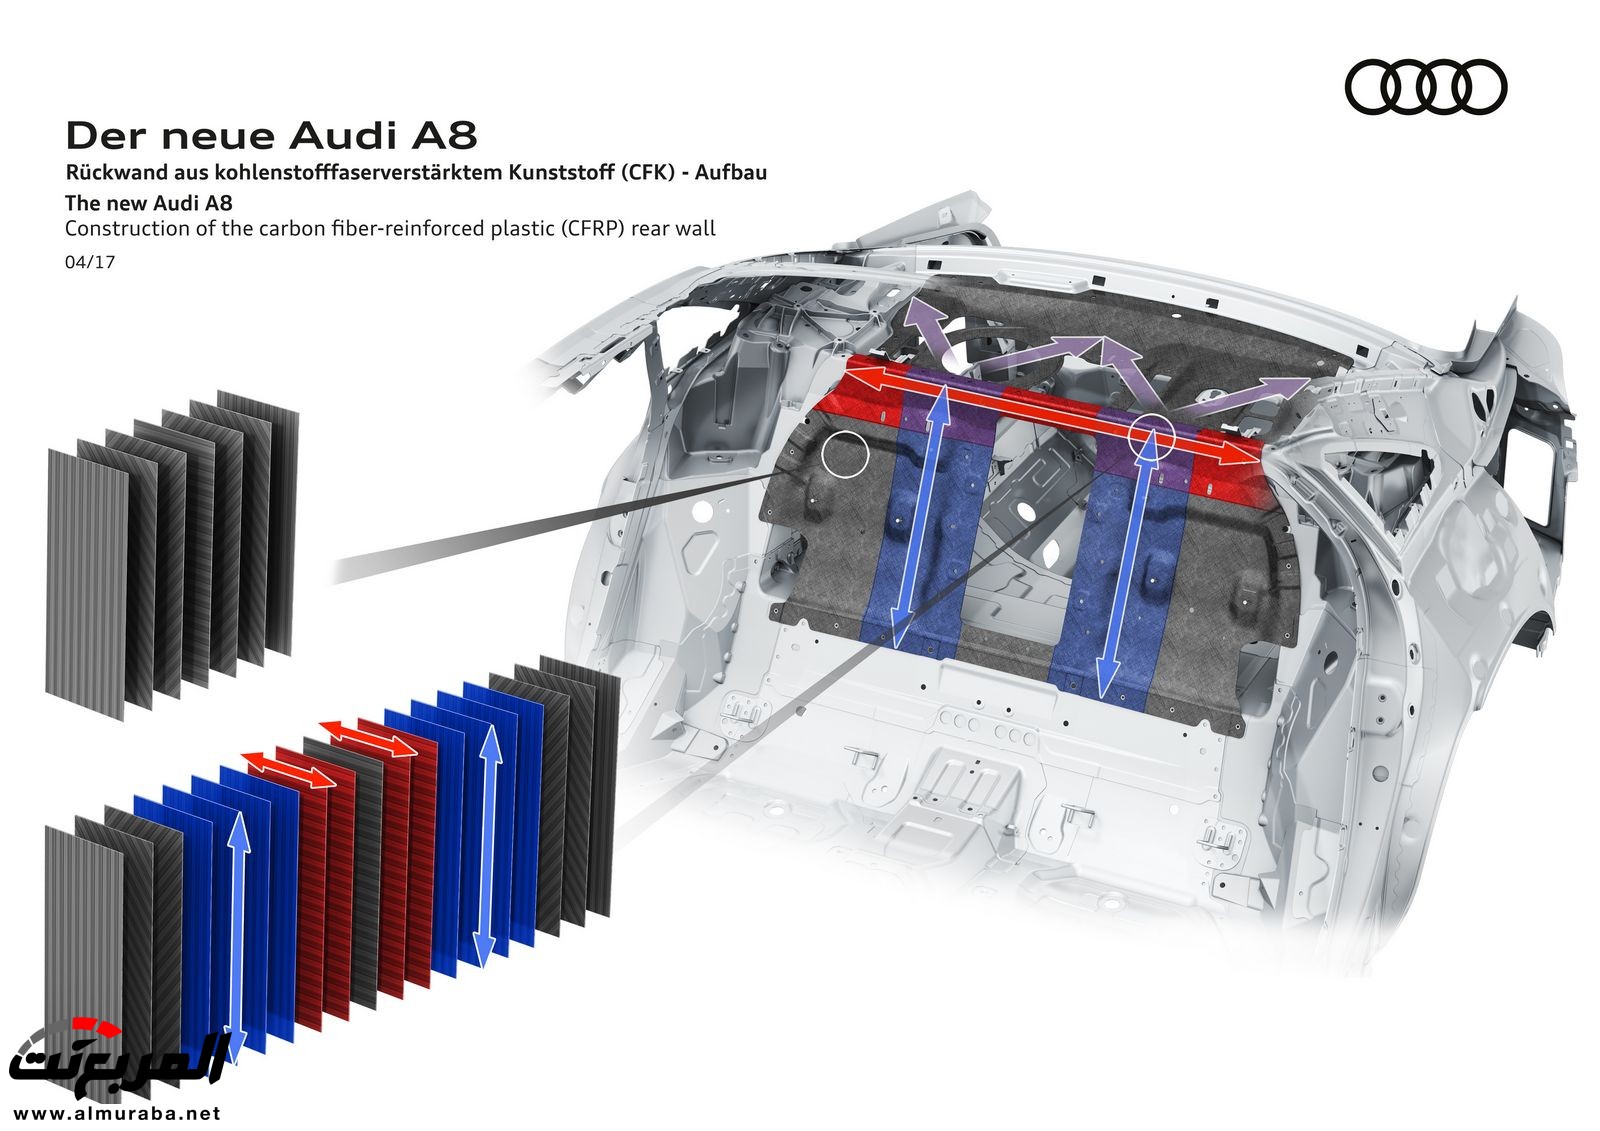 أودي A8 2018 الجديدة كلياً تكشف نفسها بتصميم وتقنيات متطورة "معلومات + 100 صورة" Audi A8 64